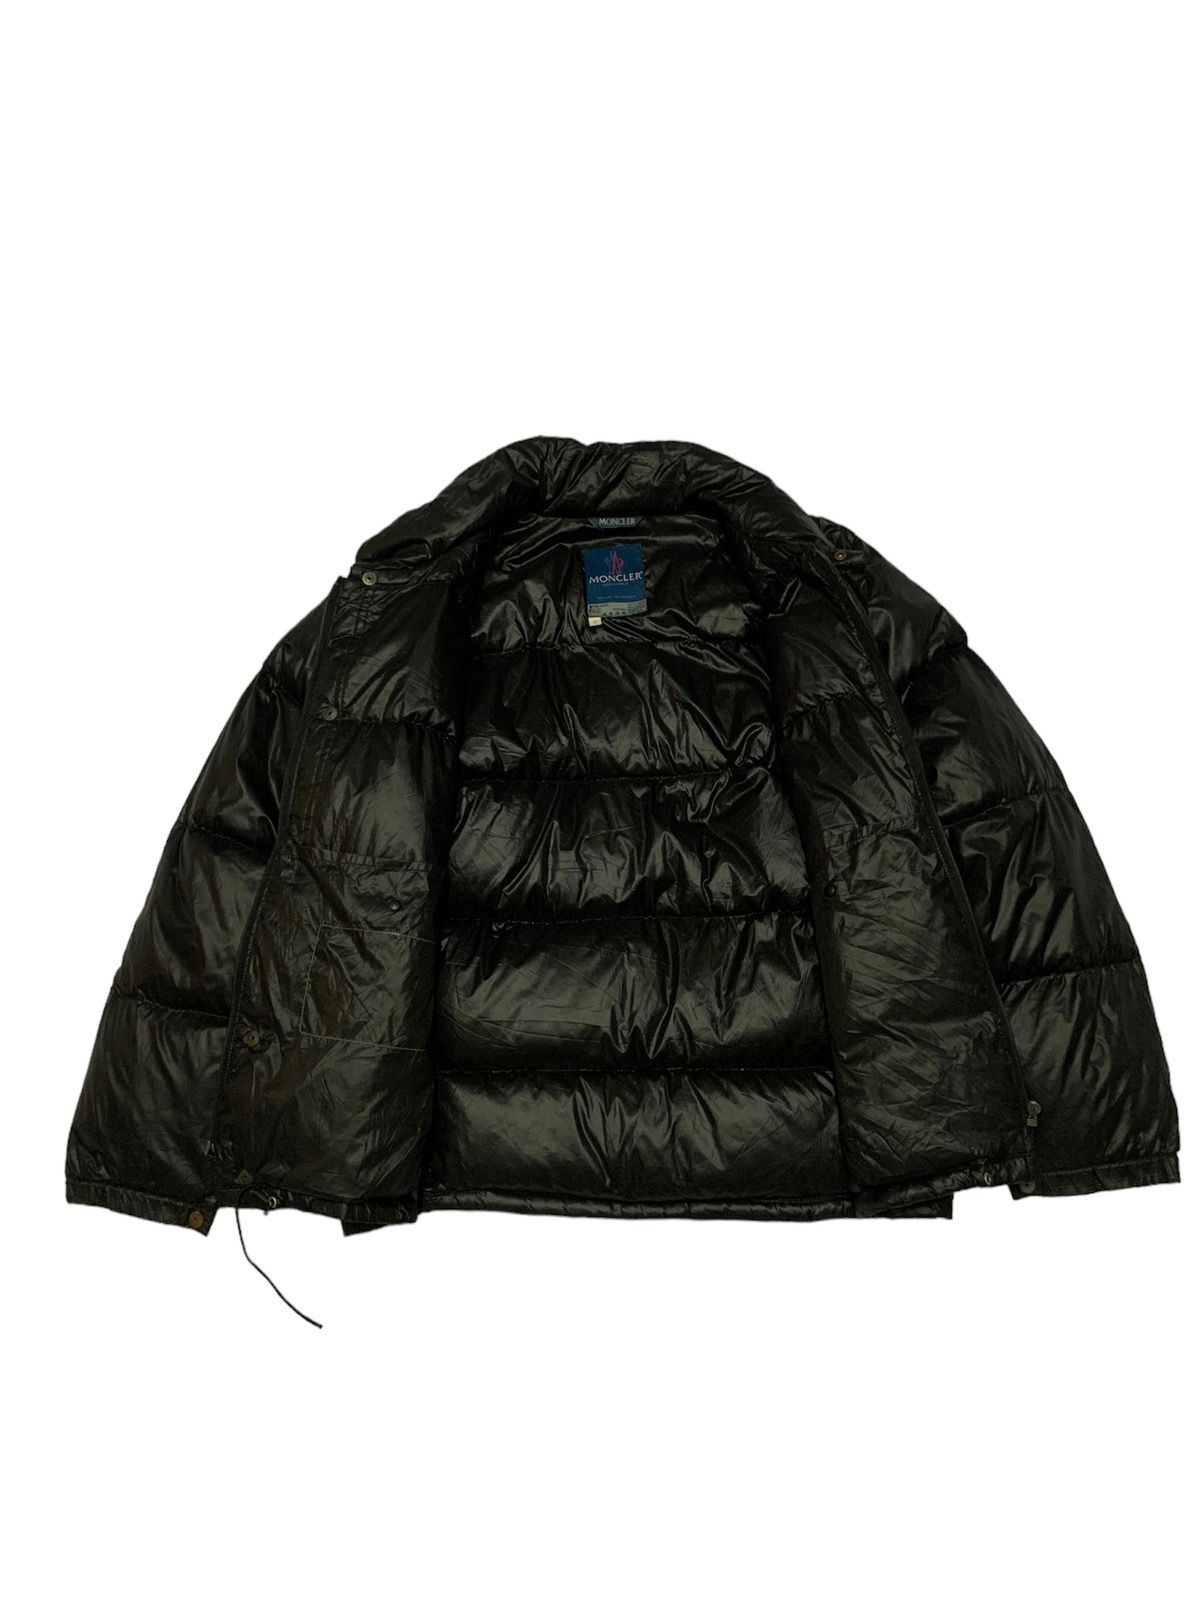 Vintage Moncler Grenoble Puffer Black Jacket - 8